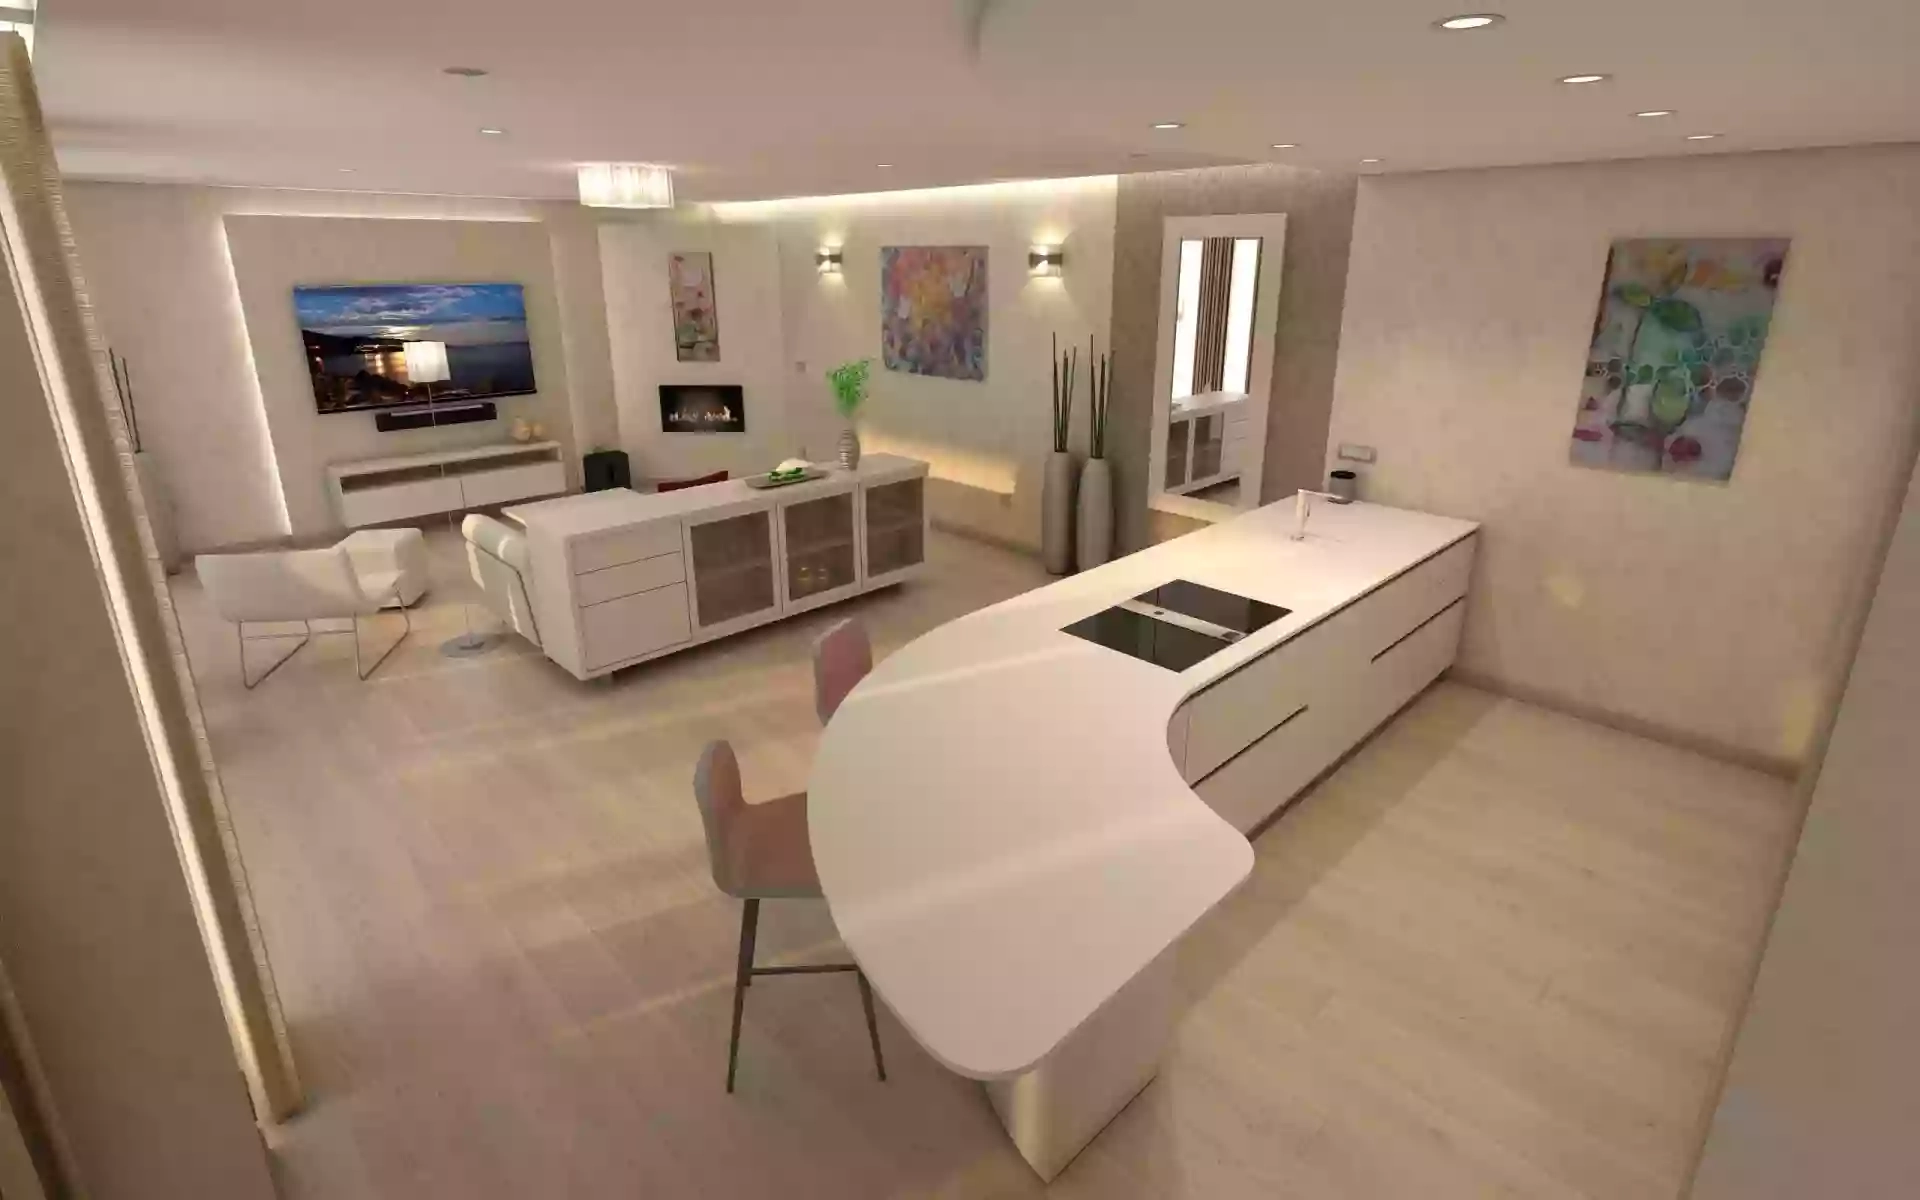 Studio Notranje opreme ProAmbient d.o.o. 3D izrisi ter pohištvo po meri, arhitektura, kuhinje